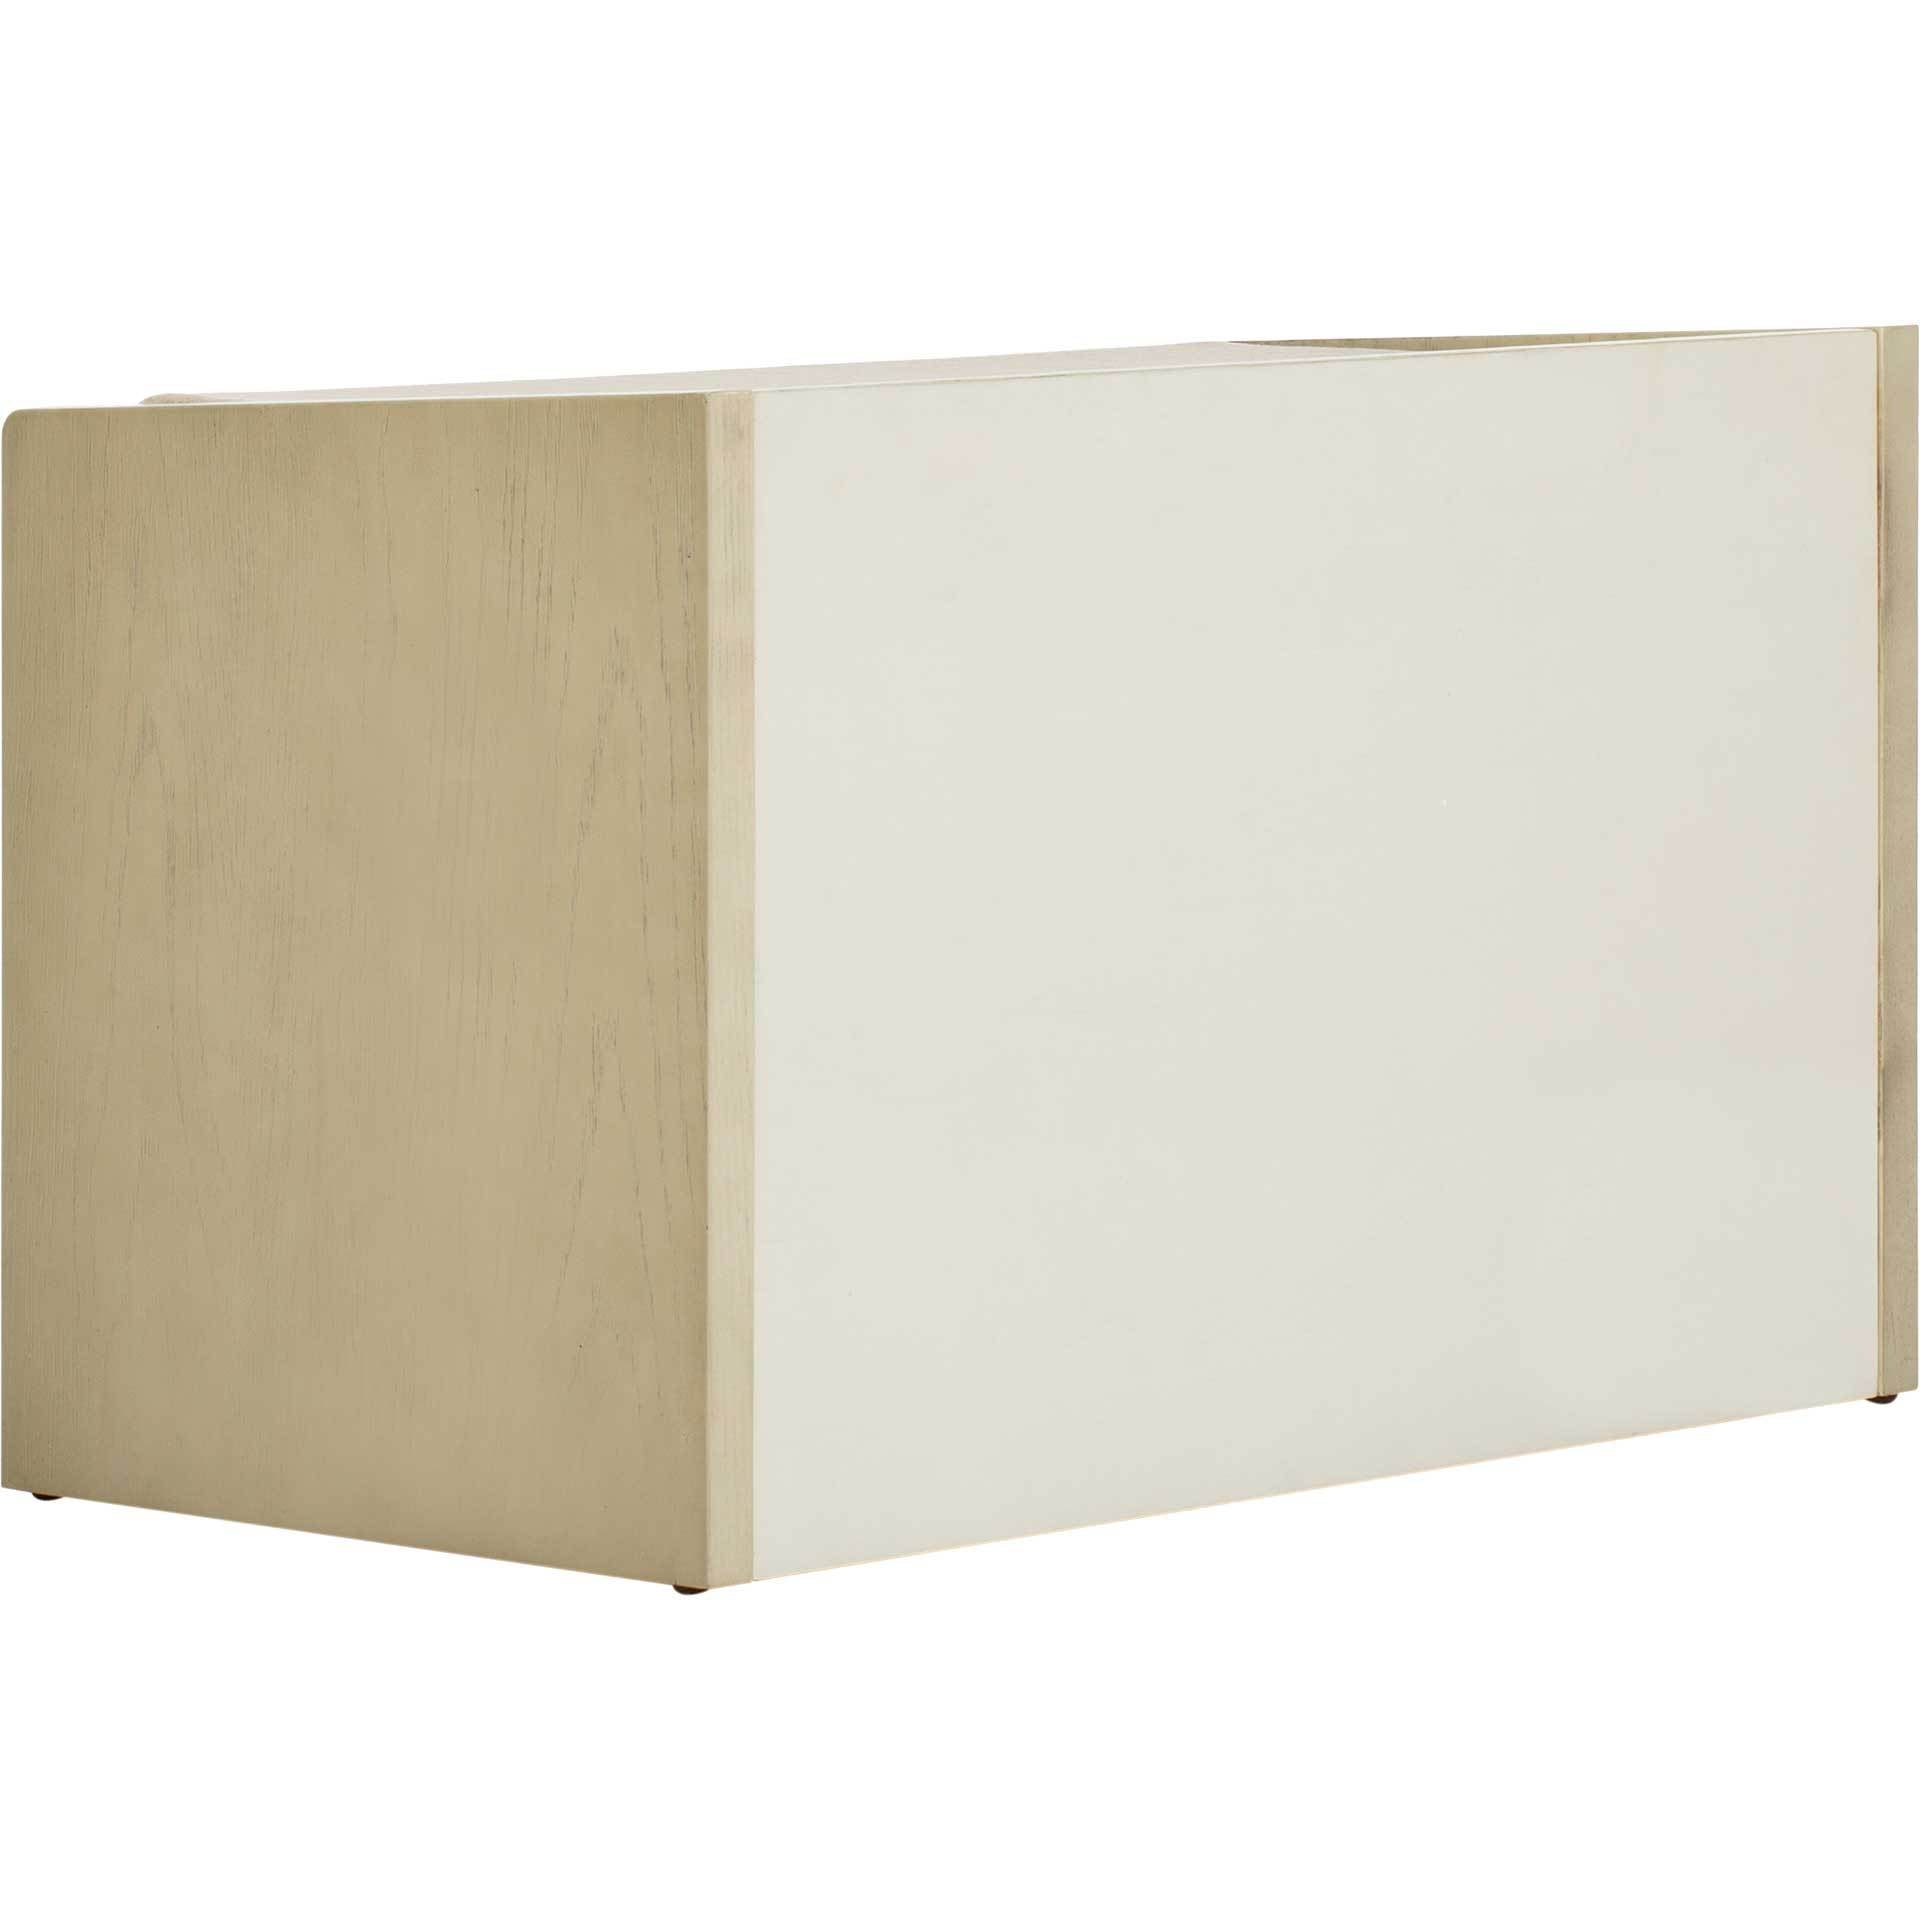 Perla Storage Bench White Wash/Beige